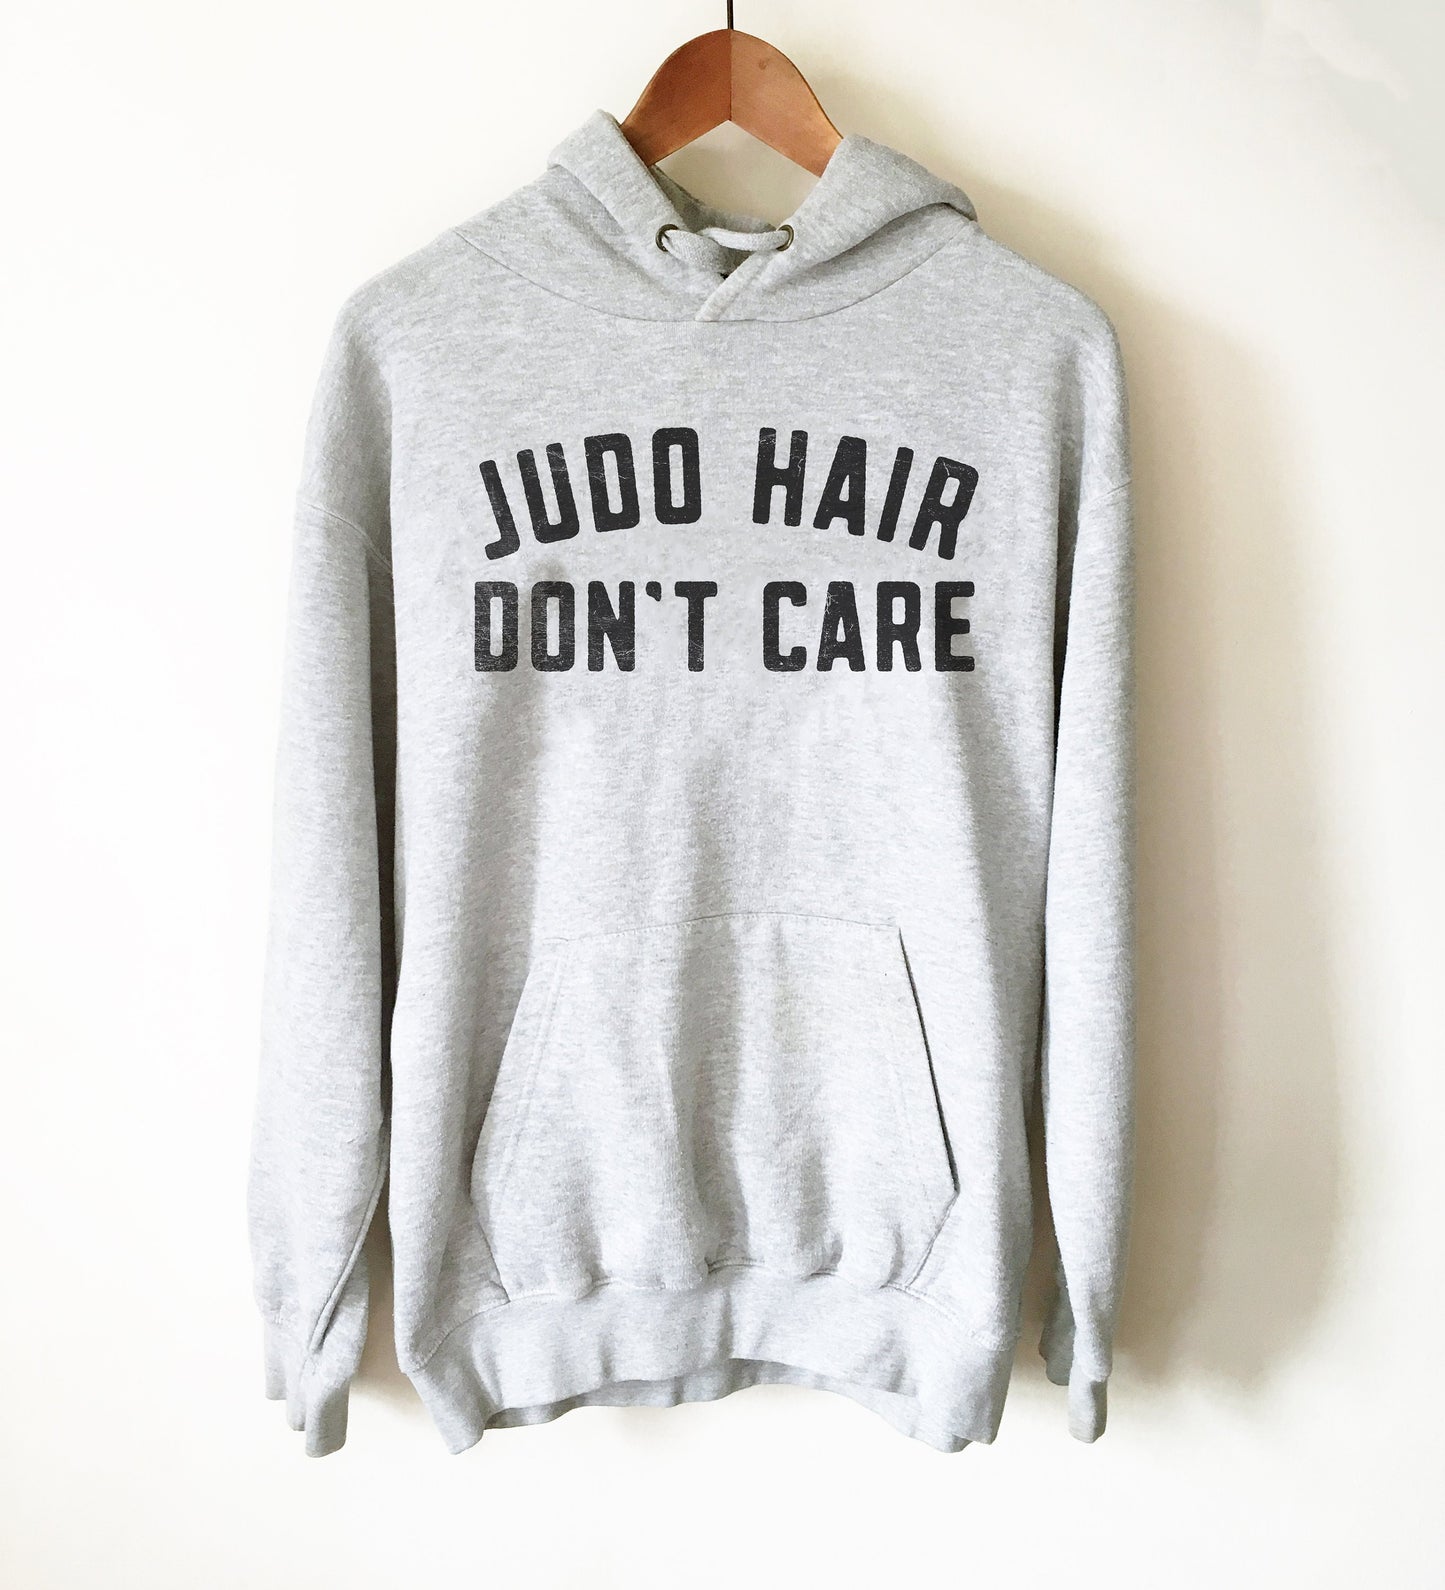 Judo Hair Don't Care Hoodie - Judo Shirt, Judo Gift, Judo Coach, Karate Shirt, Karate Gift, Martial Arts, Jiu Jitsu, Kung Fu, Gift For Coach